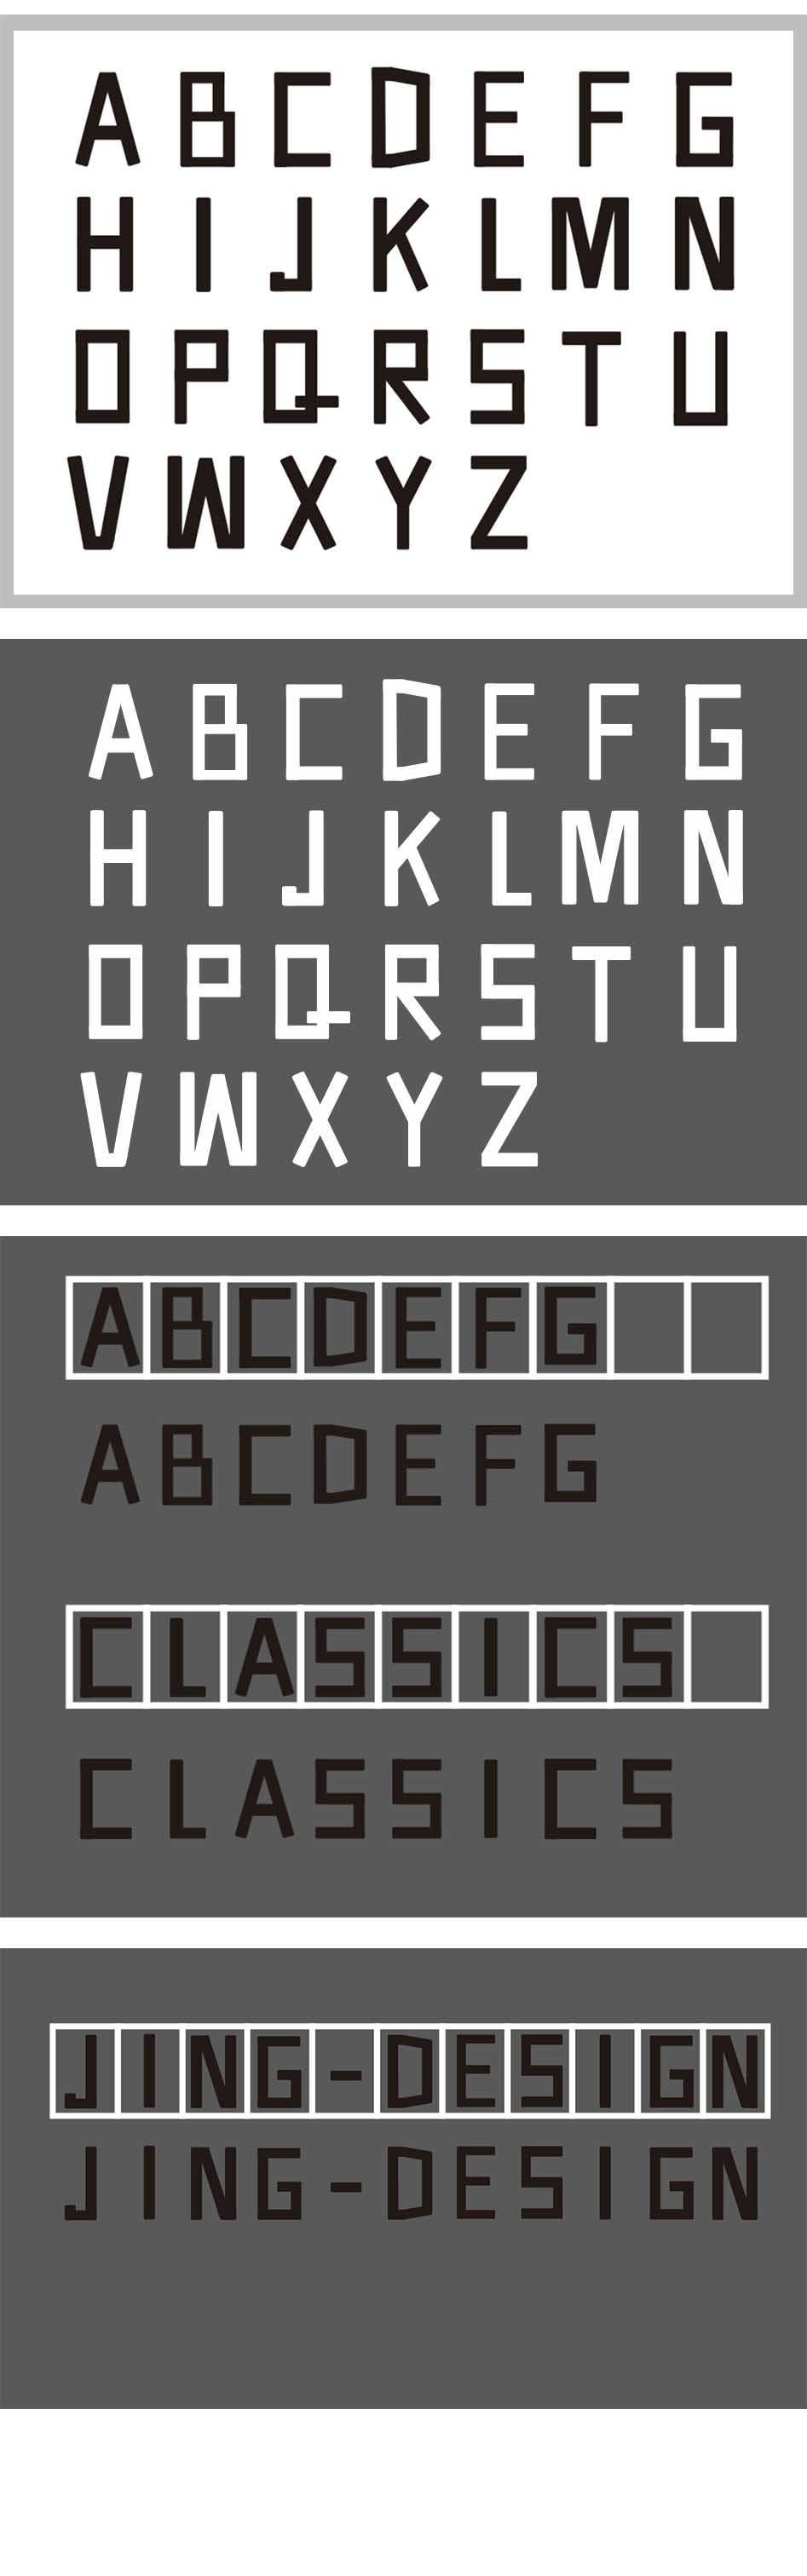 块面组合法字体图片